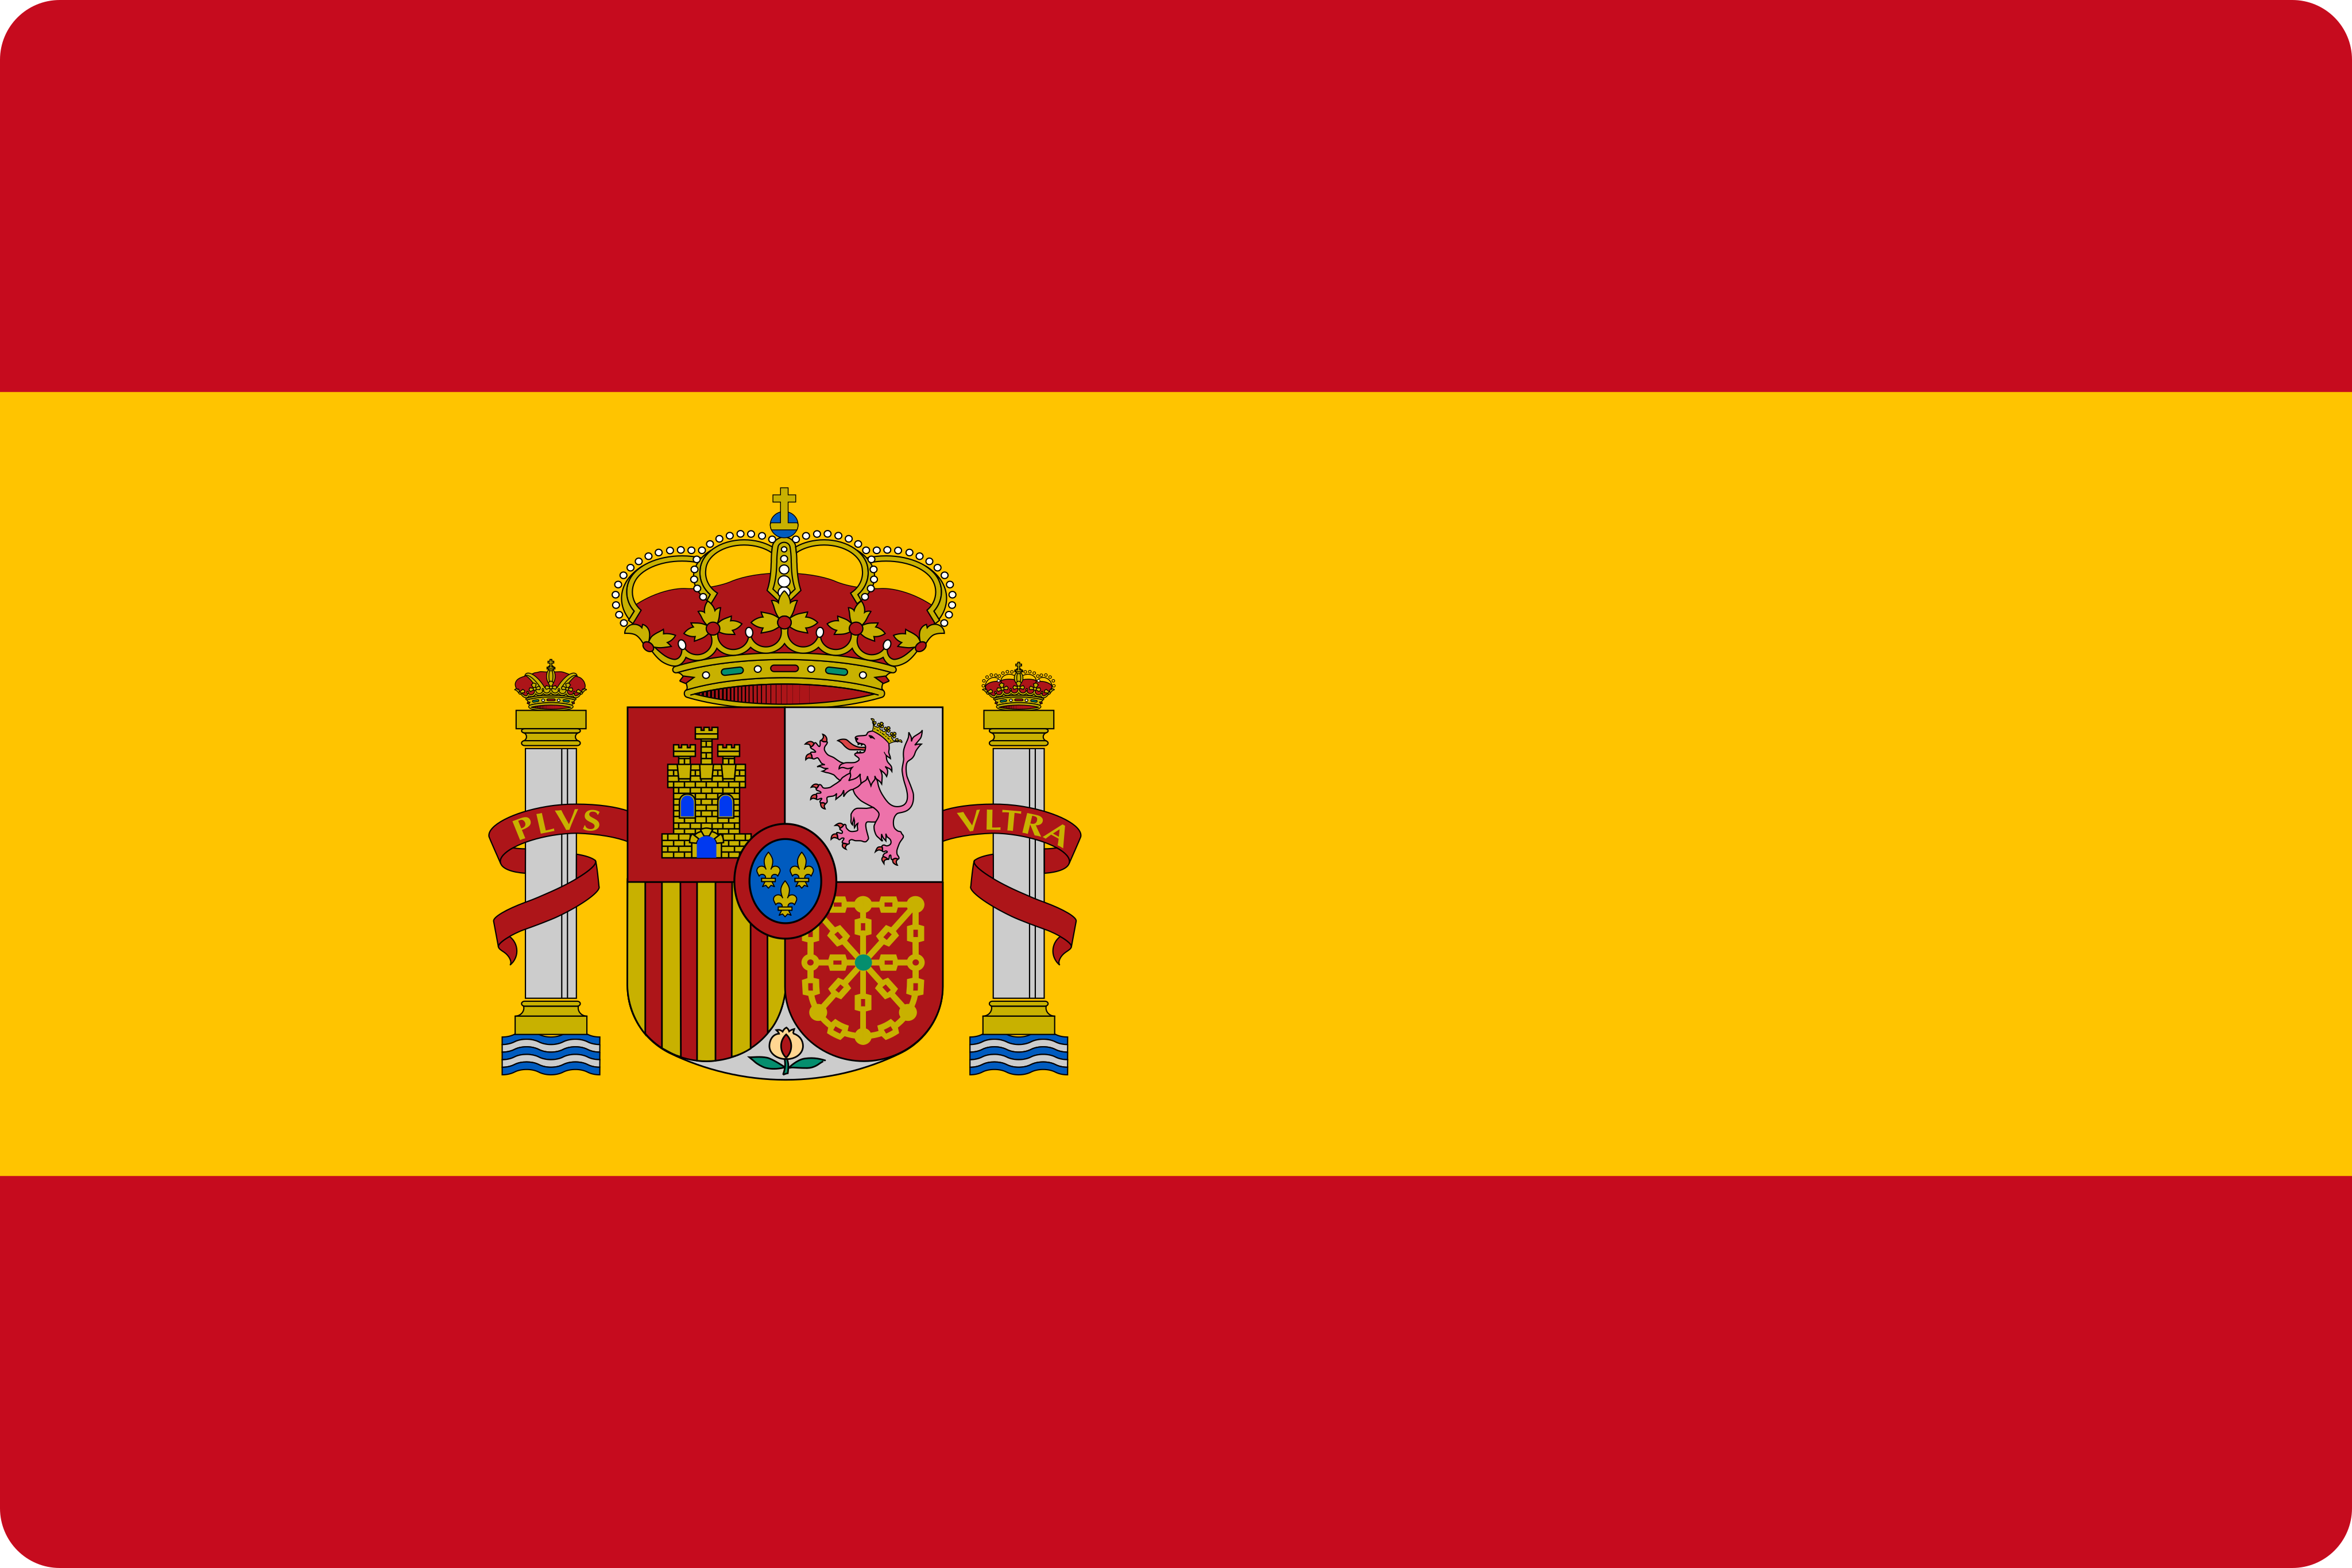 Bandeira Espanha - Spain Flag.